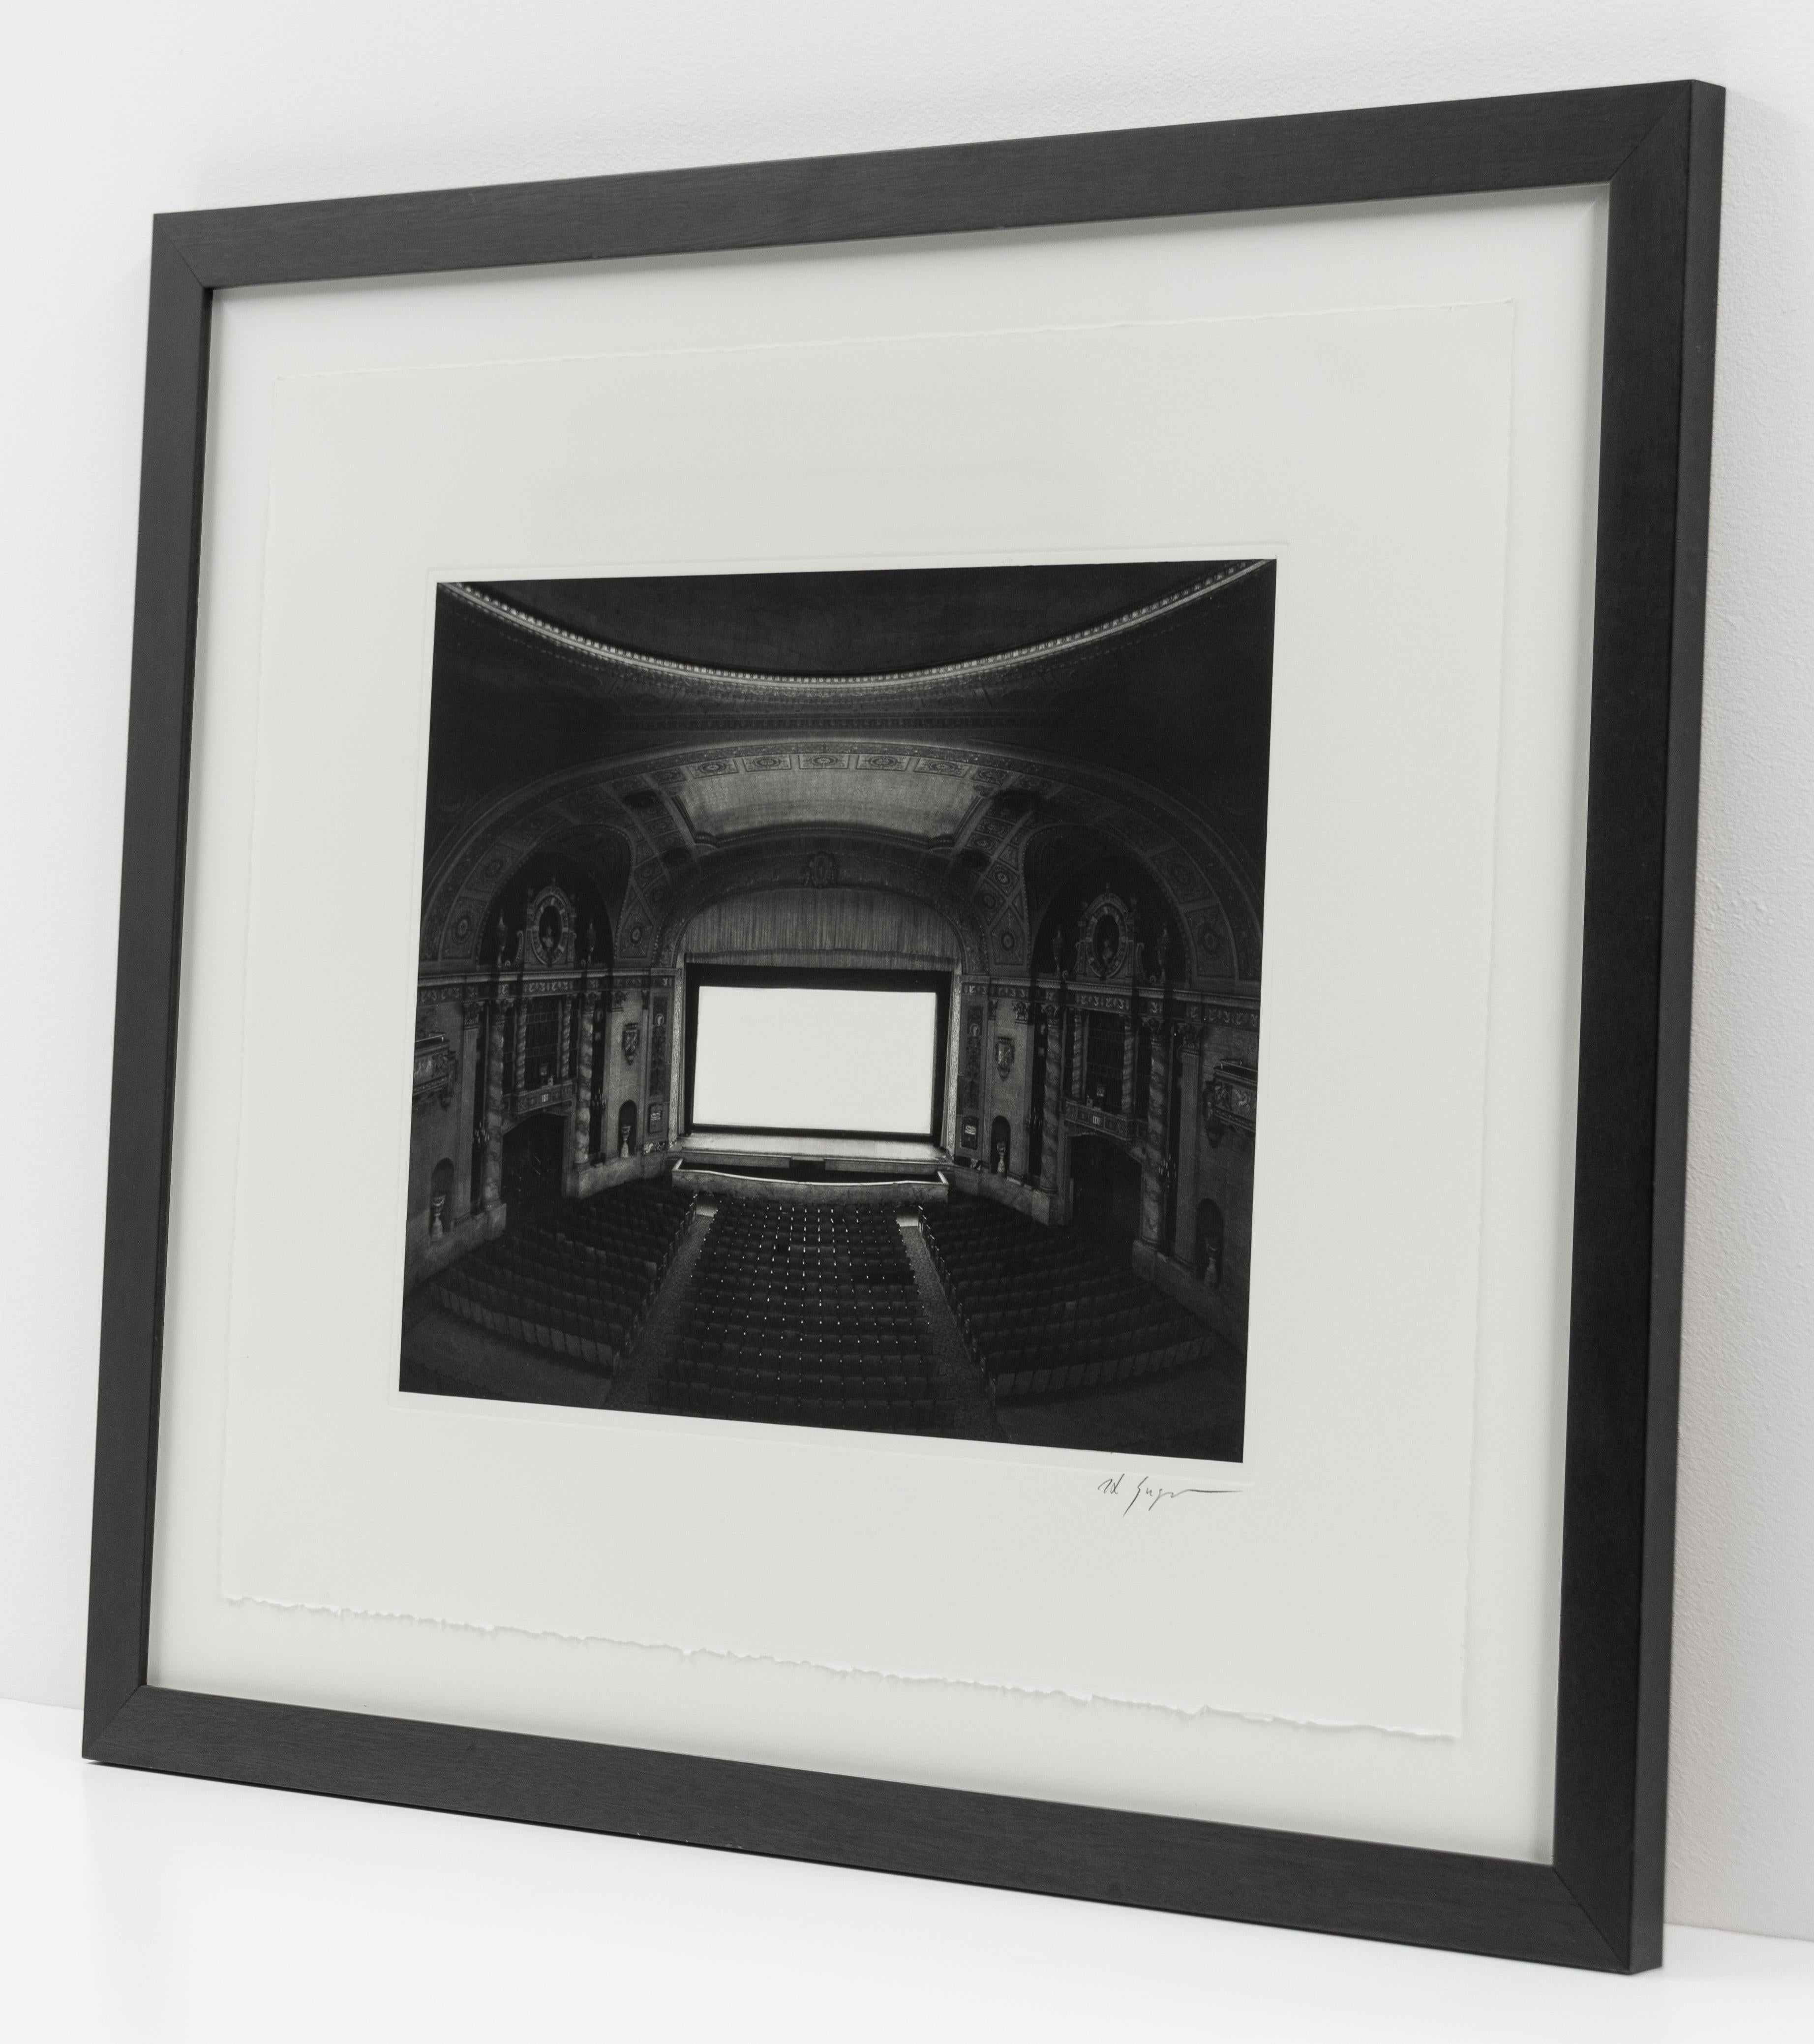 Théâtres
2002

Signé et numéroté, à gauche.

Photogravure (Edition de 1000)

11 x 14 pouces

Cette œuvre de Hiroshi Sugimoto est proposée par le CLAMP à New York.